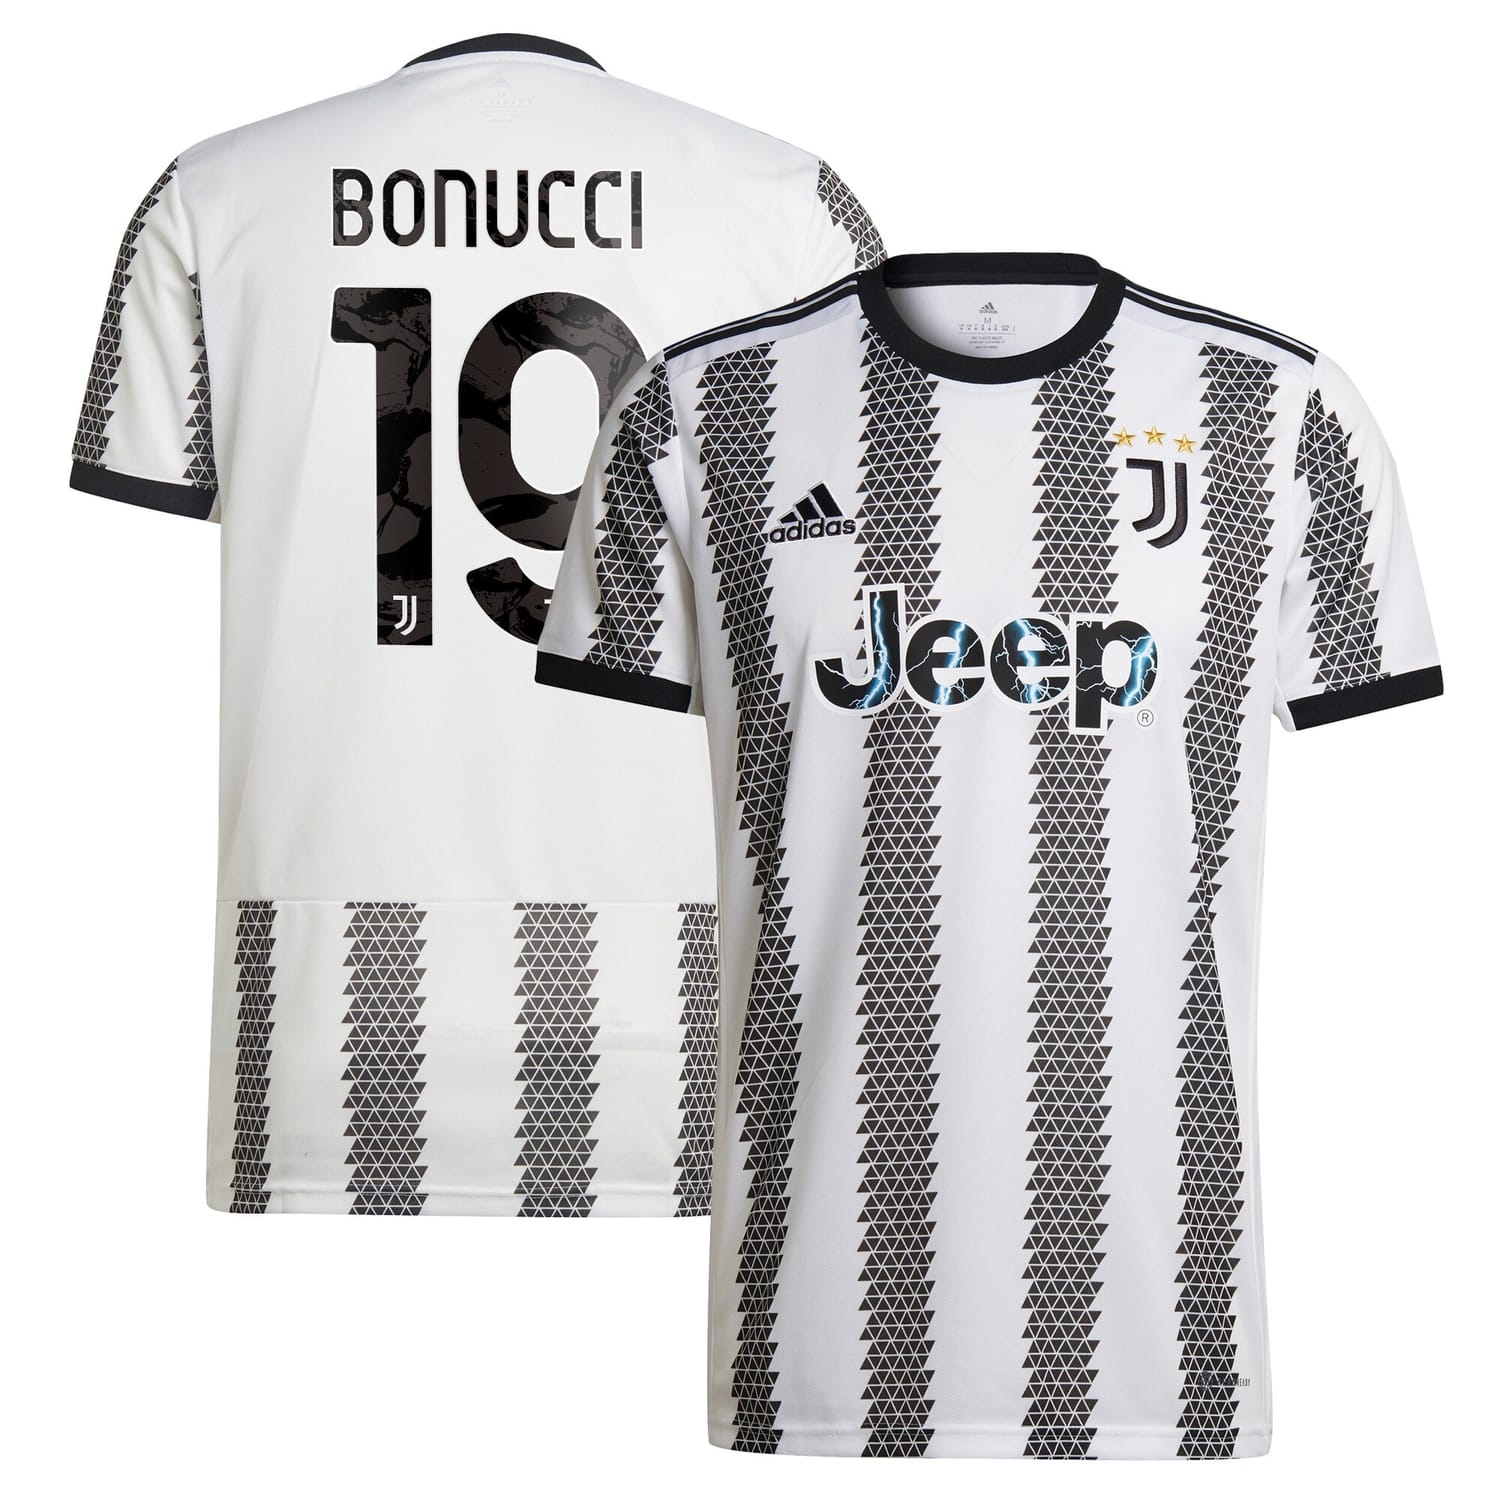 Serie A Juventus Home Jersey Shirt 2022-23 player Leonardo Bonucci 19 printing for Men